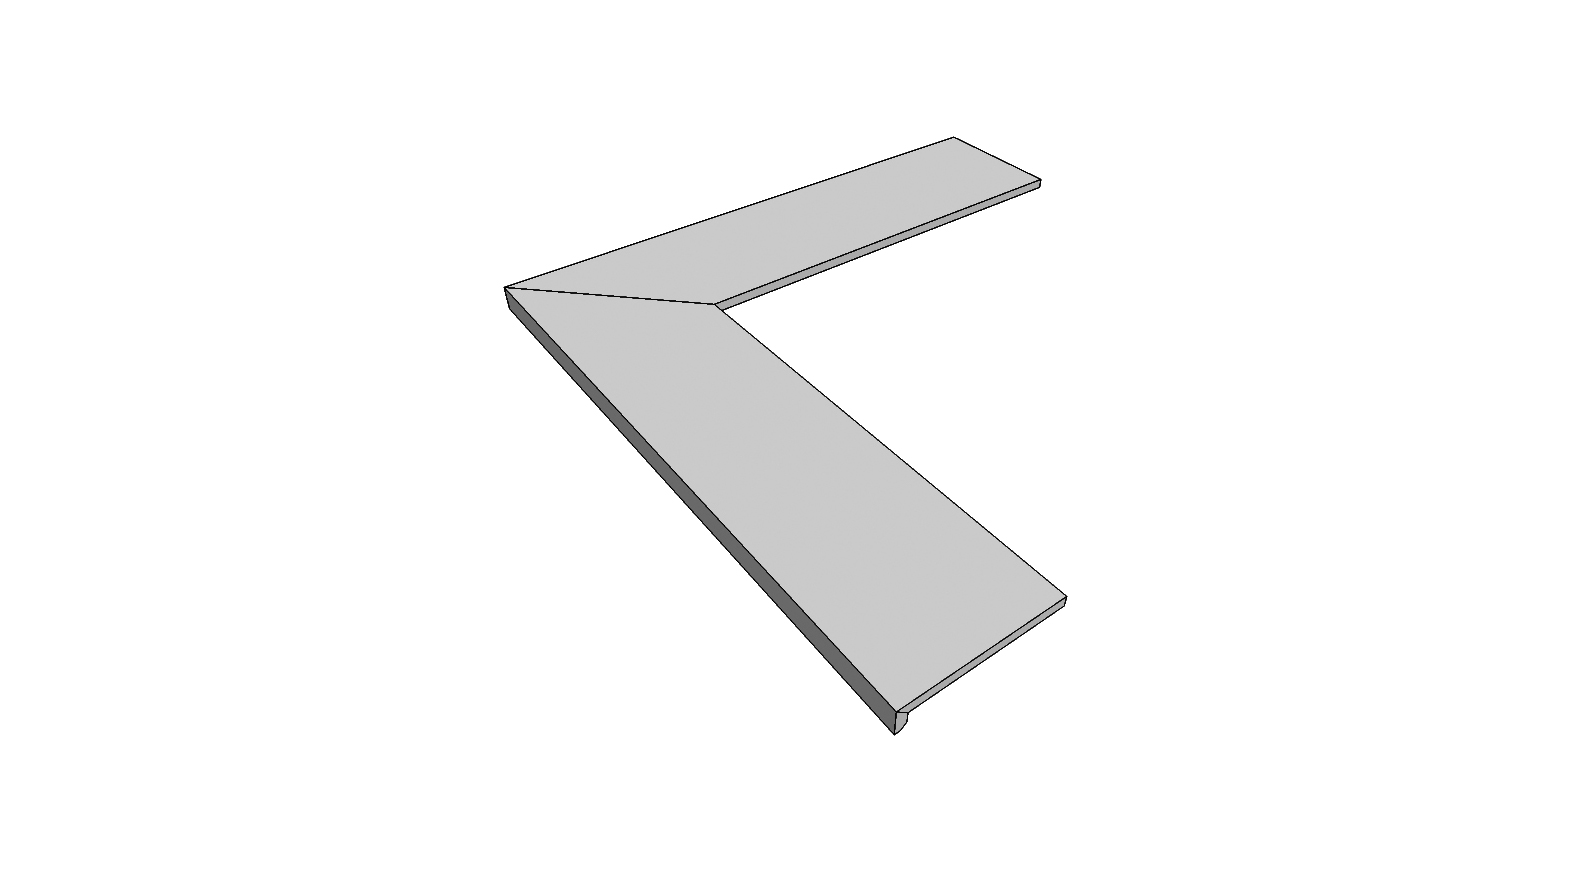 L-rand randtegel aflopend gelijmd volledige buitenhoek (2 stuks) <span style="white-space:nowrap;">30x60x5 cm</span>   <span style="white-space:nowrap;">ép. 20mm</span>